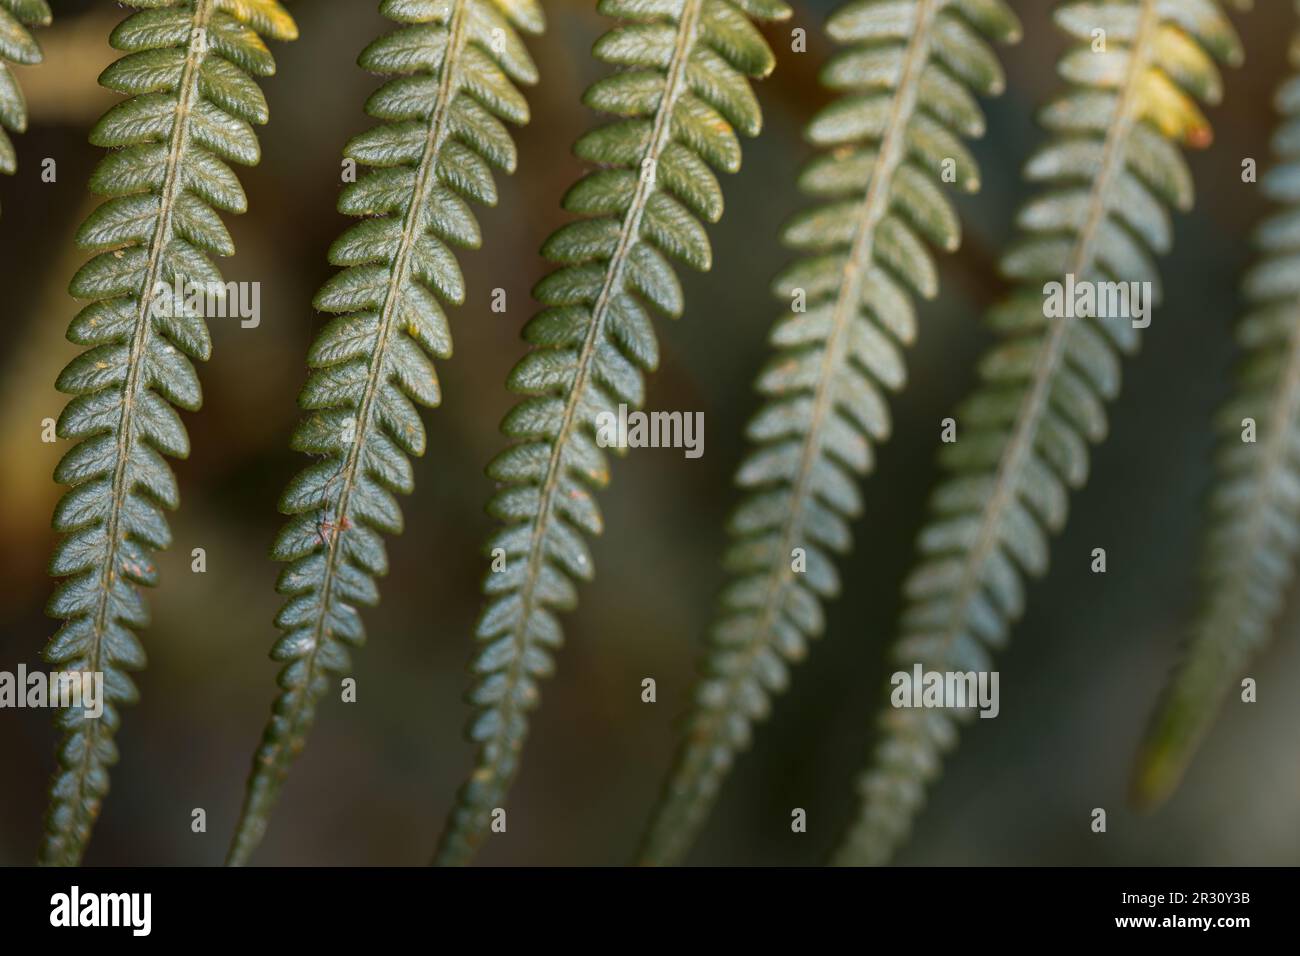 Eine Nahaufnahme der grünen Farnblätter zeigt Venenstrukturen innerhalb des Blatts auf verwischten natürlichen Hintergrund. Draufsicht. Flach verlegt. Stockfoto